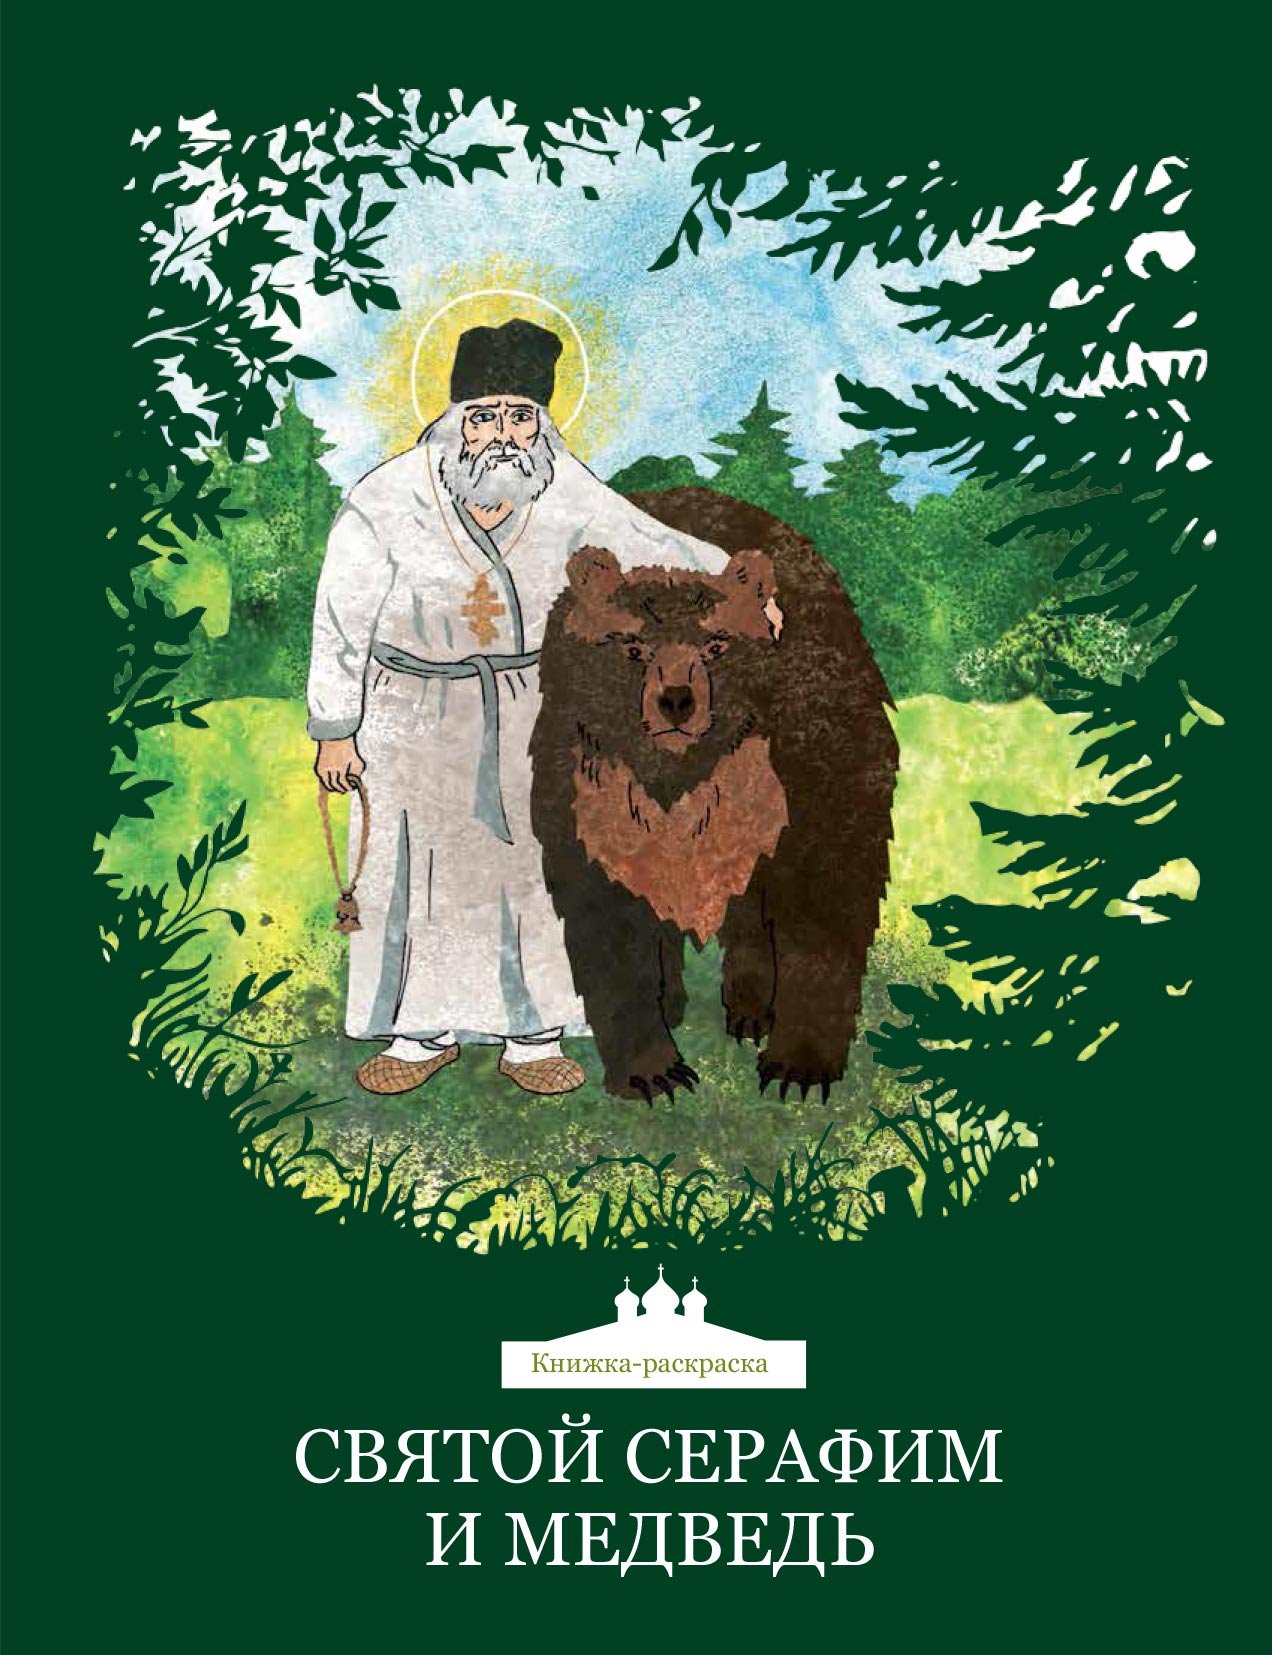 Книги о Серафиме Саровском для детей